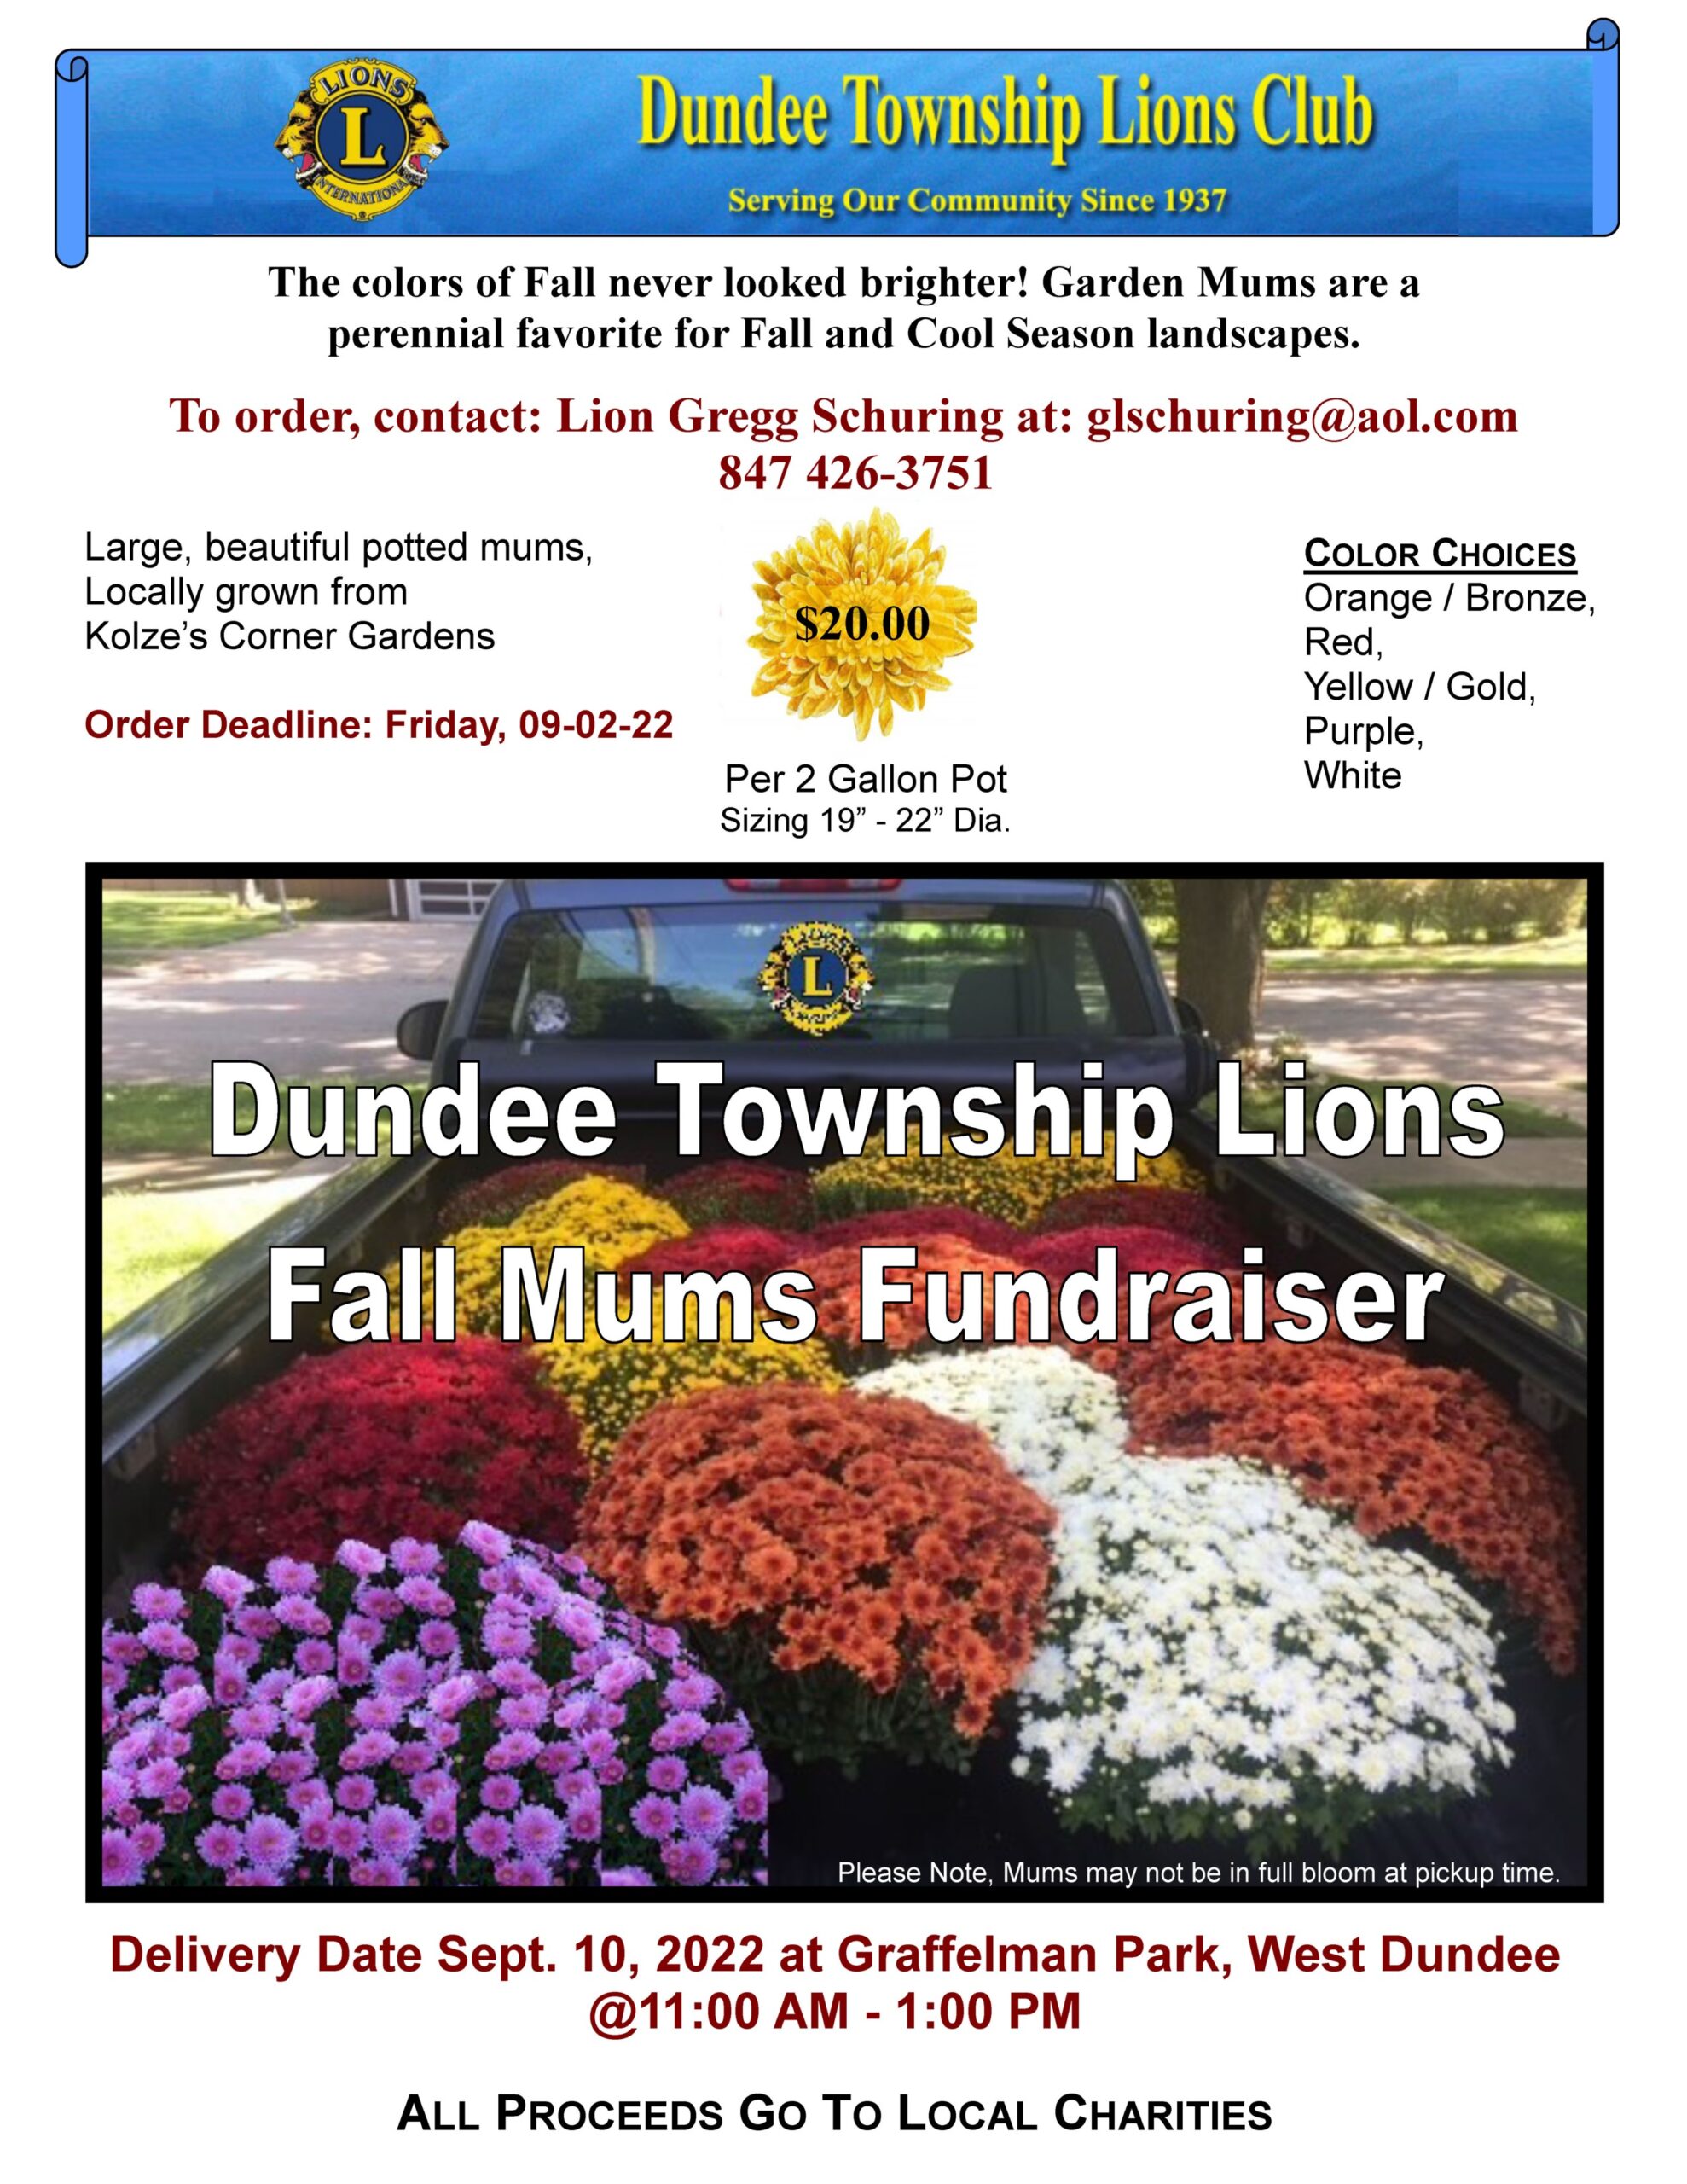 Dundee lions Fall Mumms fundraiser flyer